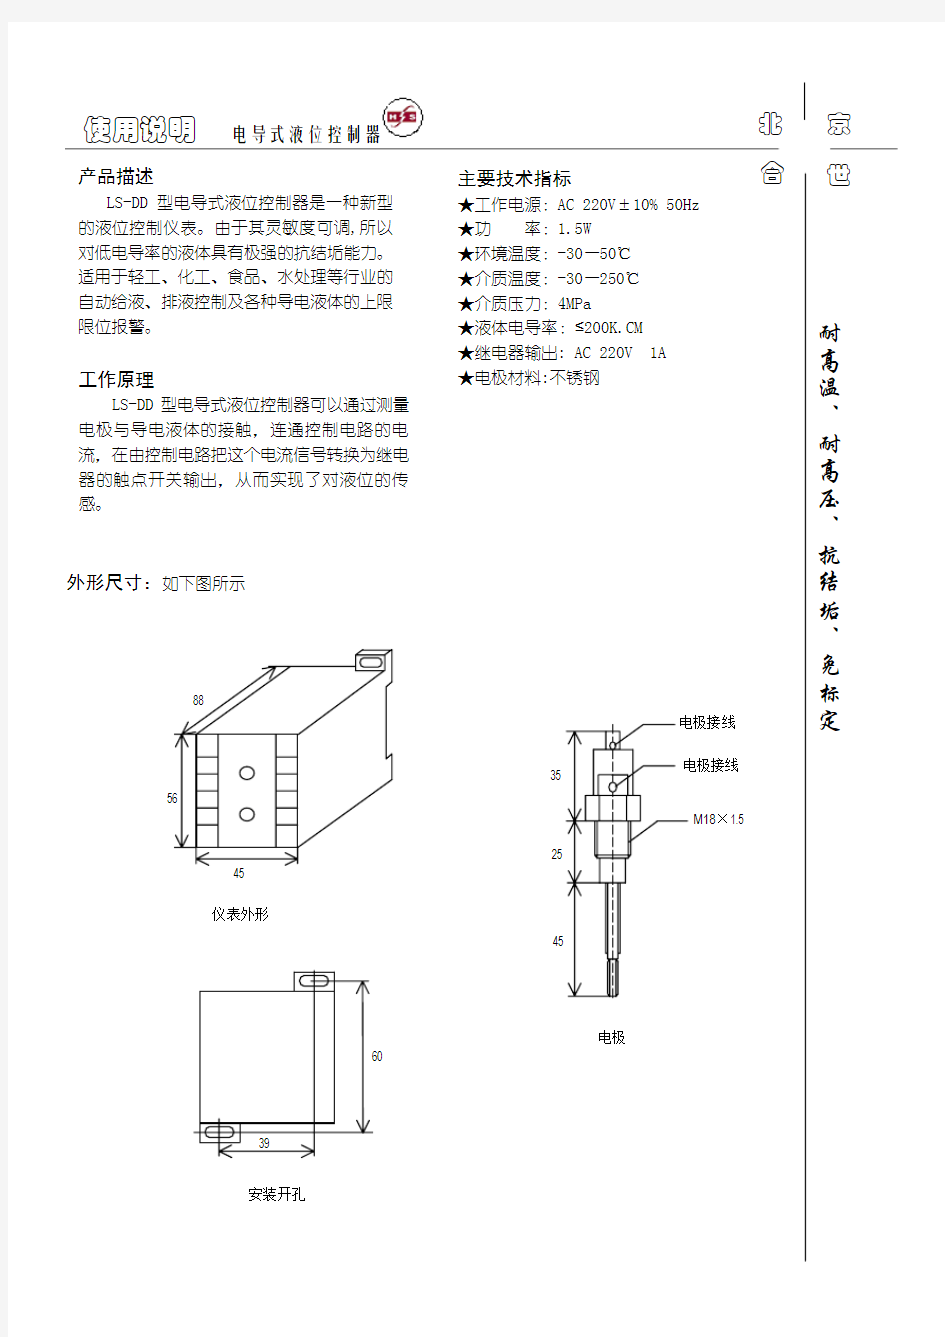 LS-DD 型电导式液位控制器使用说明